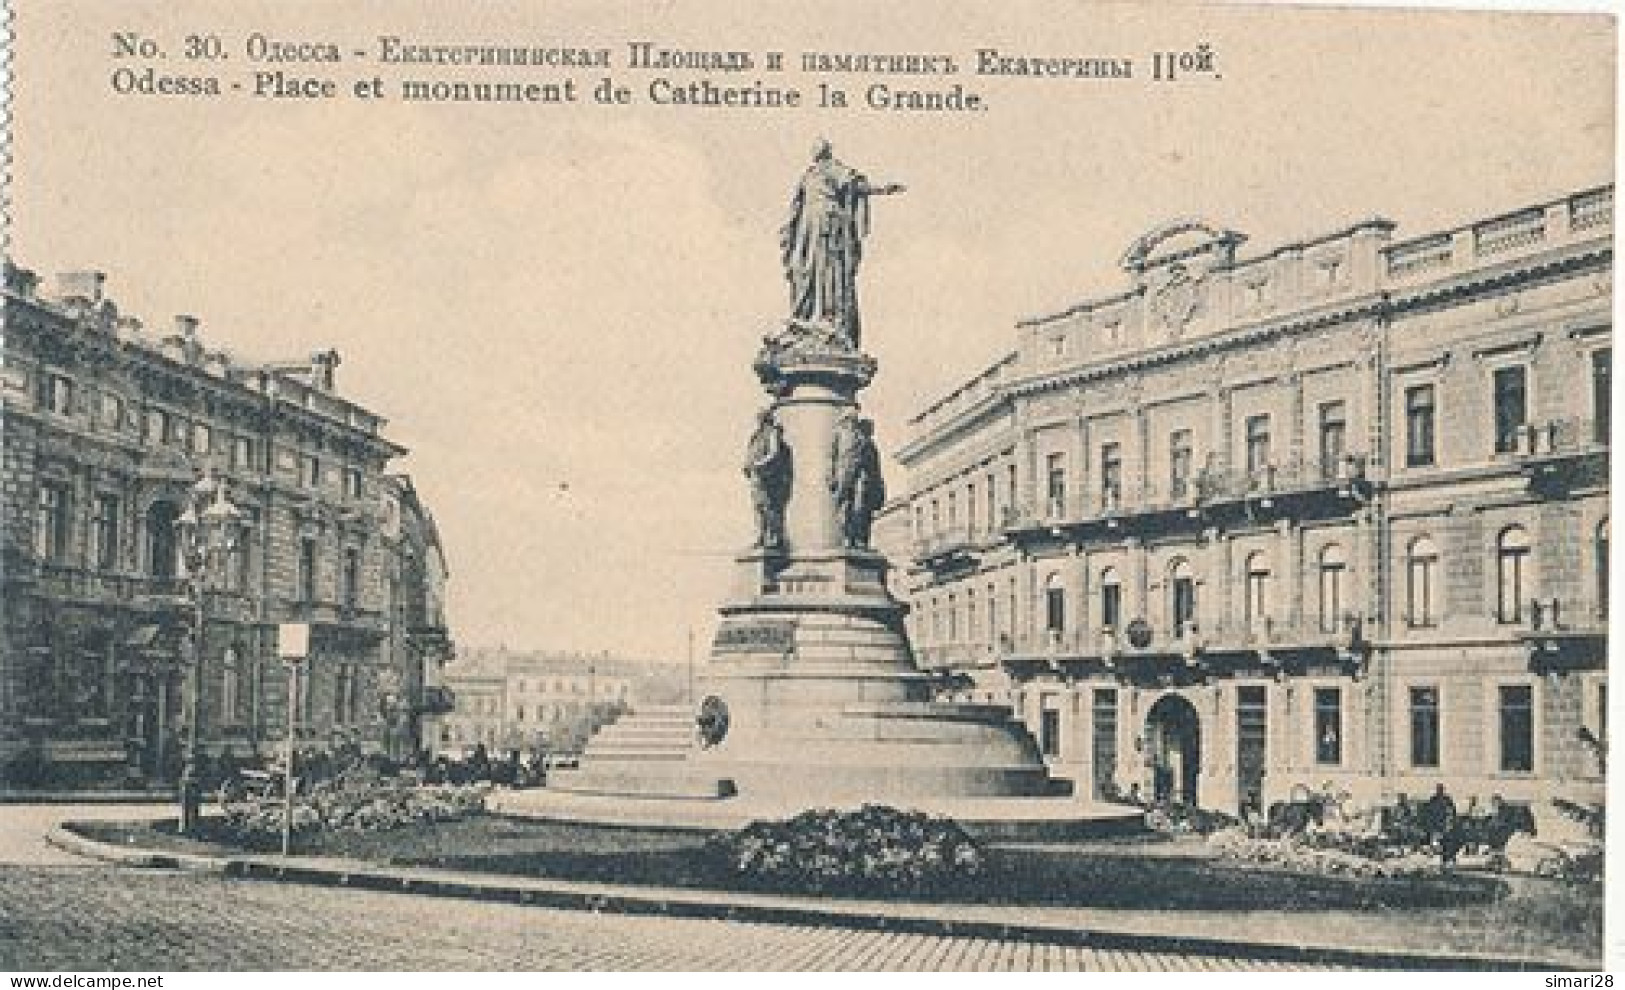 ODESSA - N° 30 - PLACE ET MONUMENT DE CATHERINE LA GRANDE (CP DE CARNET) - Ukraine